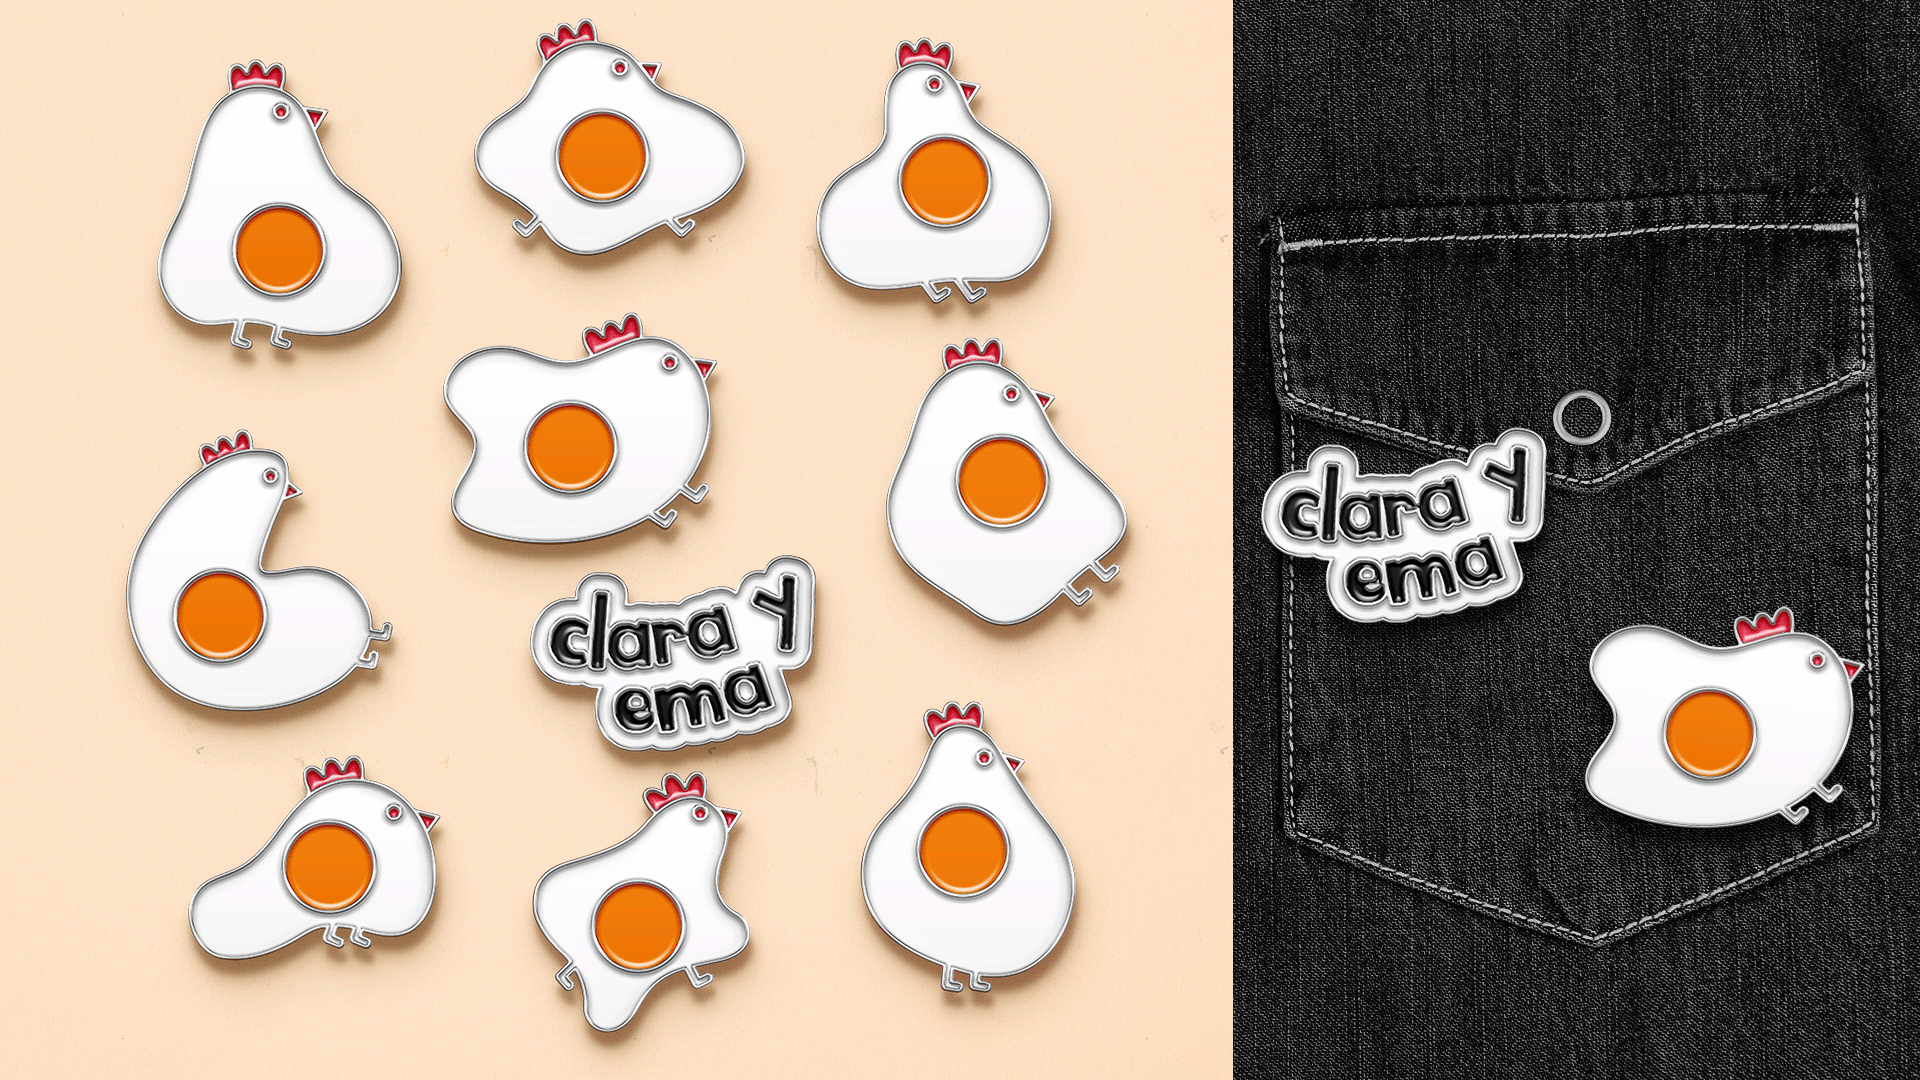 艺点鸡蛋品牌vi设计案例分享-每天一点创意 